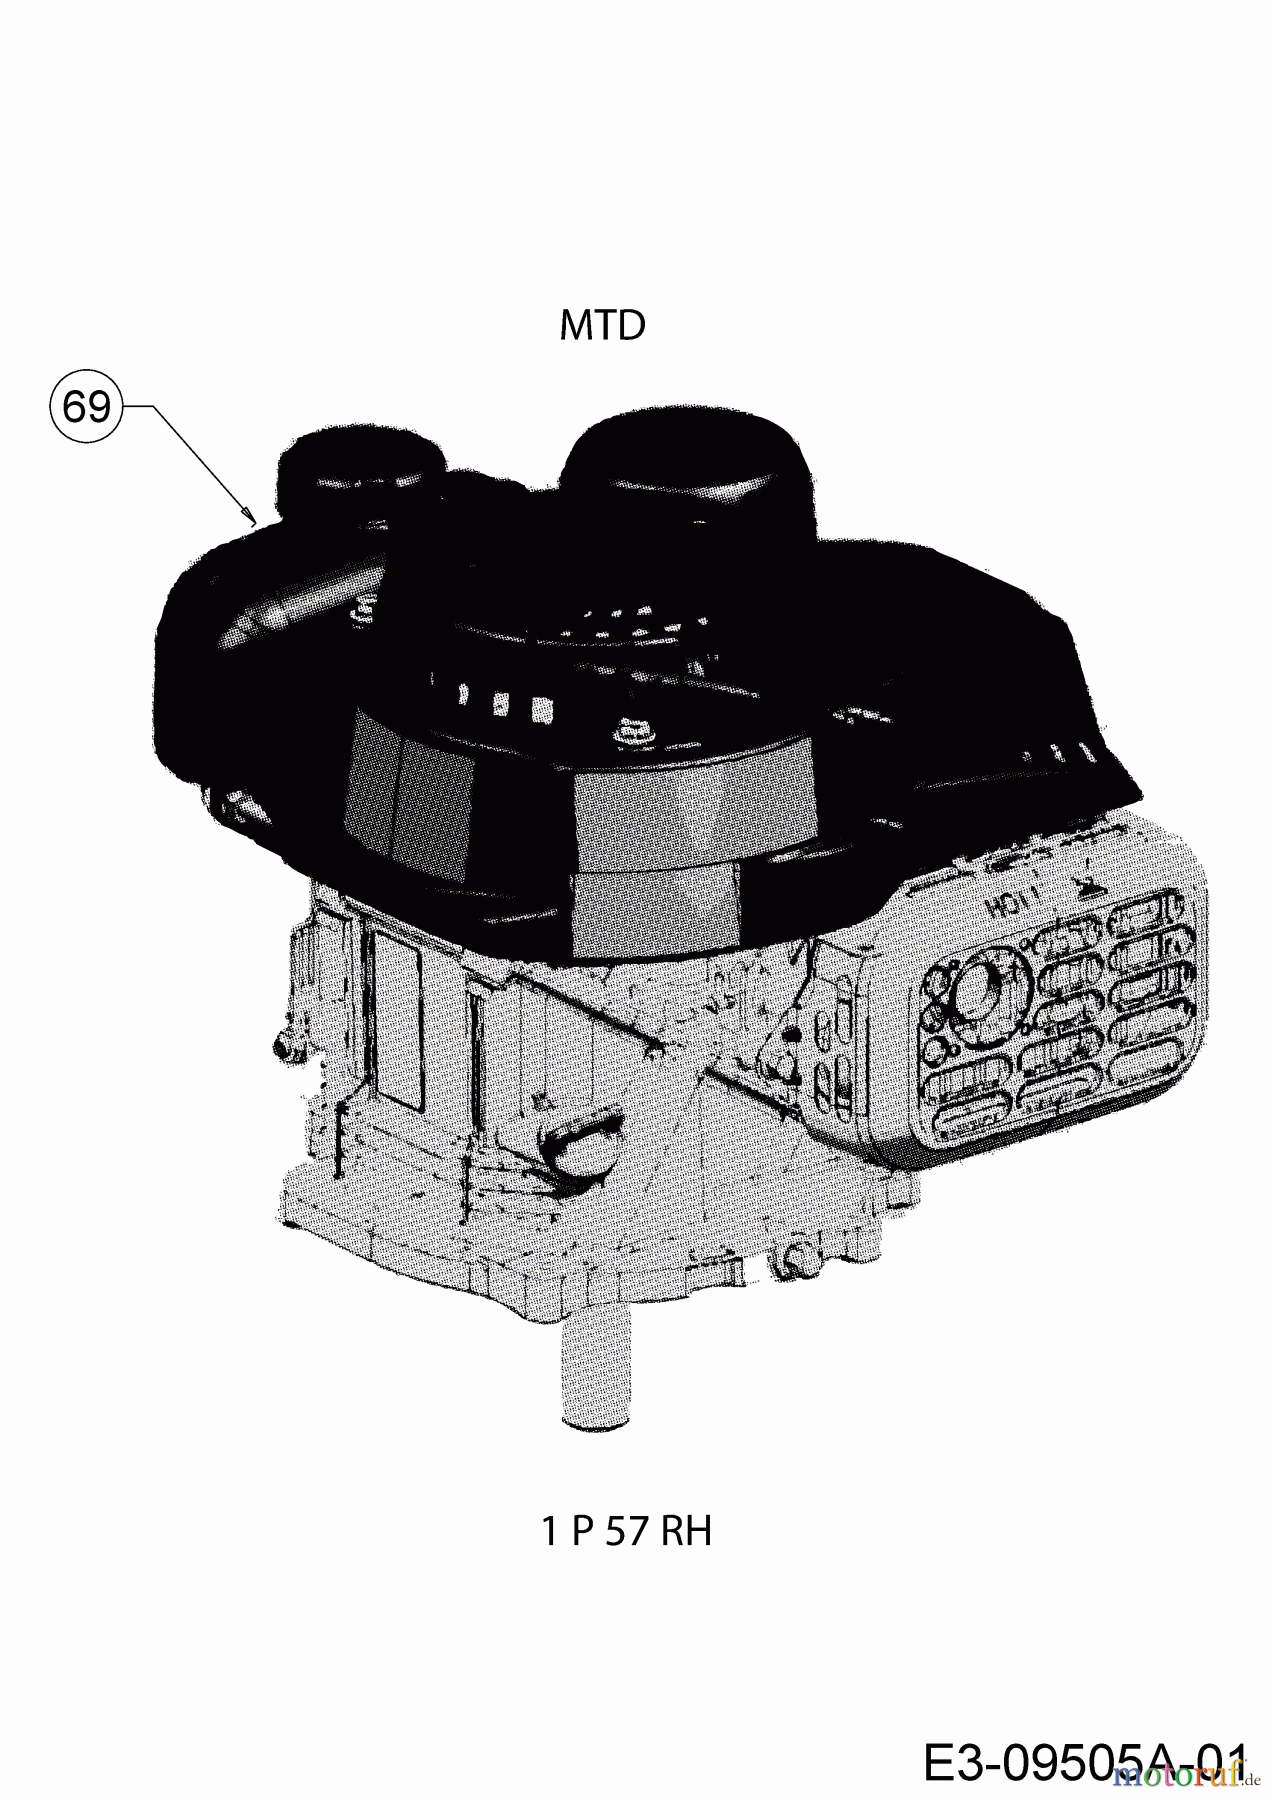  MTD Motormäher mit Antrieb Smart 42 SPO 12D-LASJ600  (2016) Motor MTD